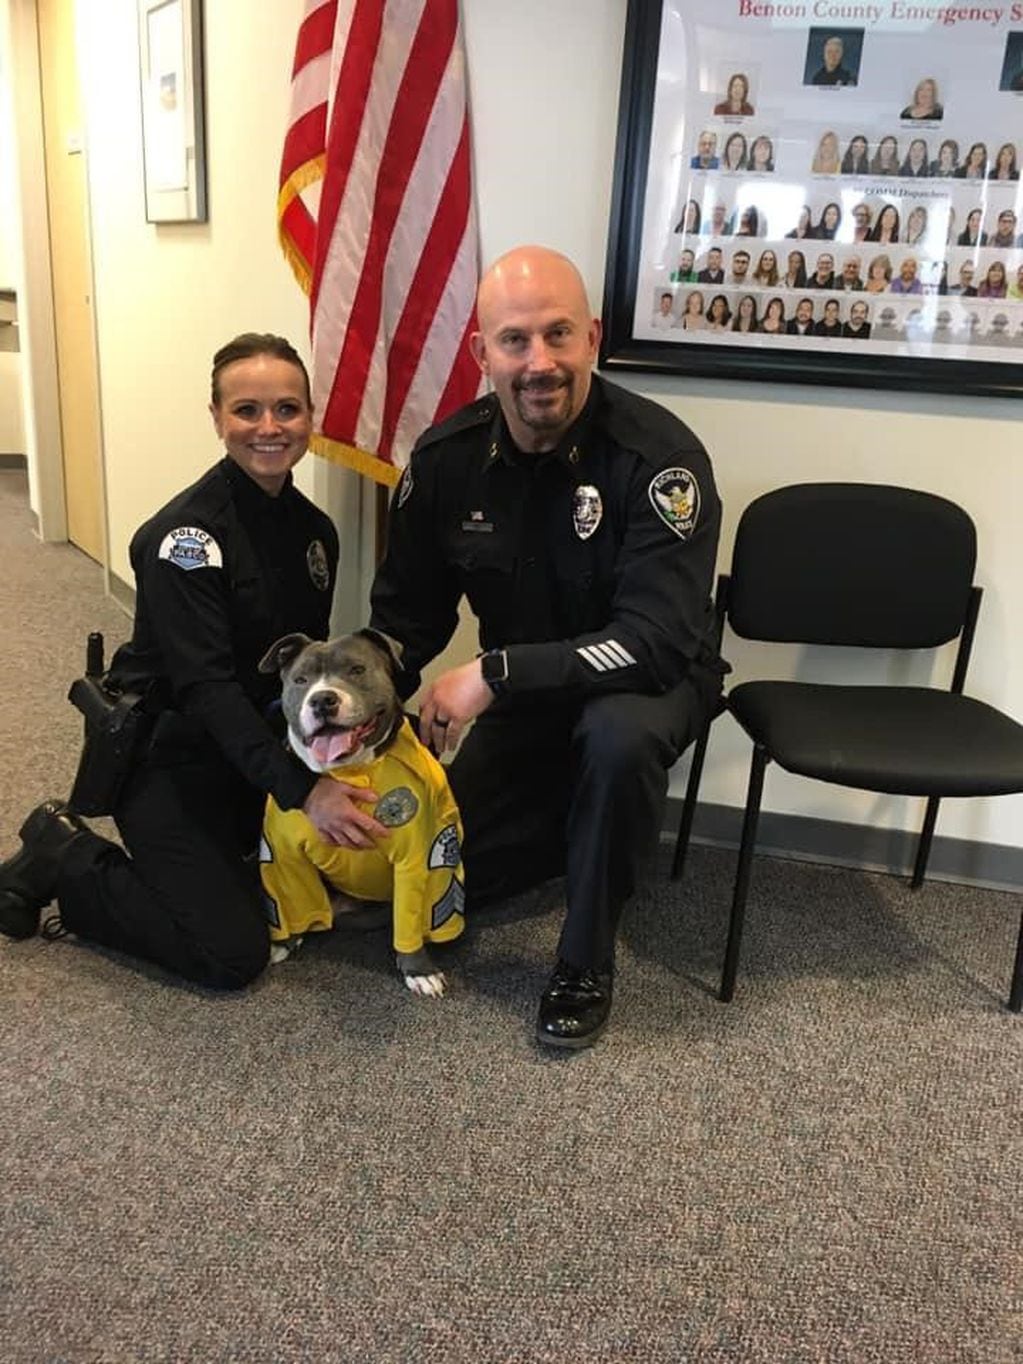 Eddie, el perro Pitbull con cáncer terminal al que convirtieron en policía.